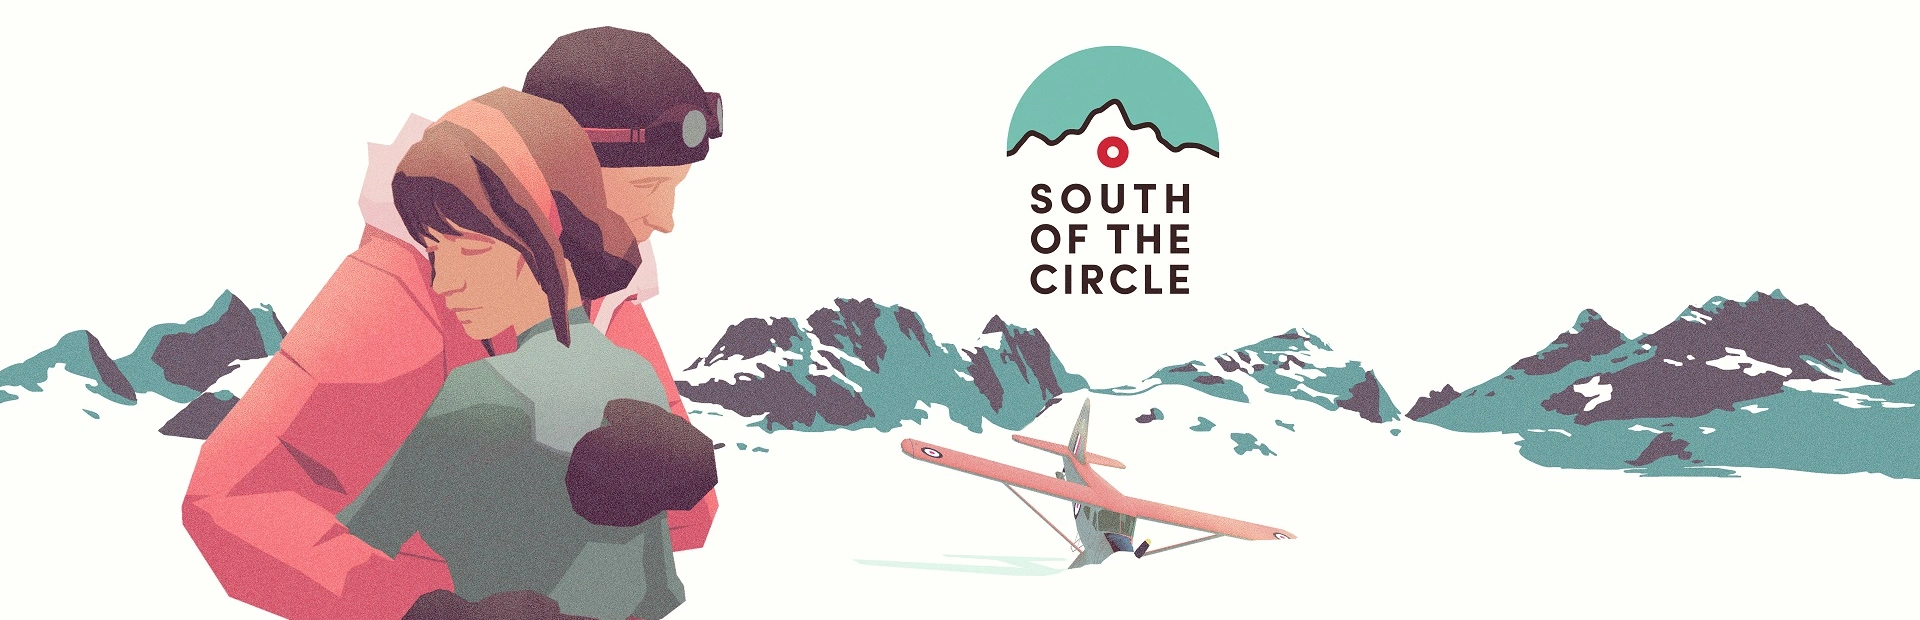 دانلود بازی South of the Circle برای PC | گیمباتو